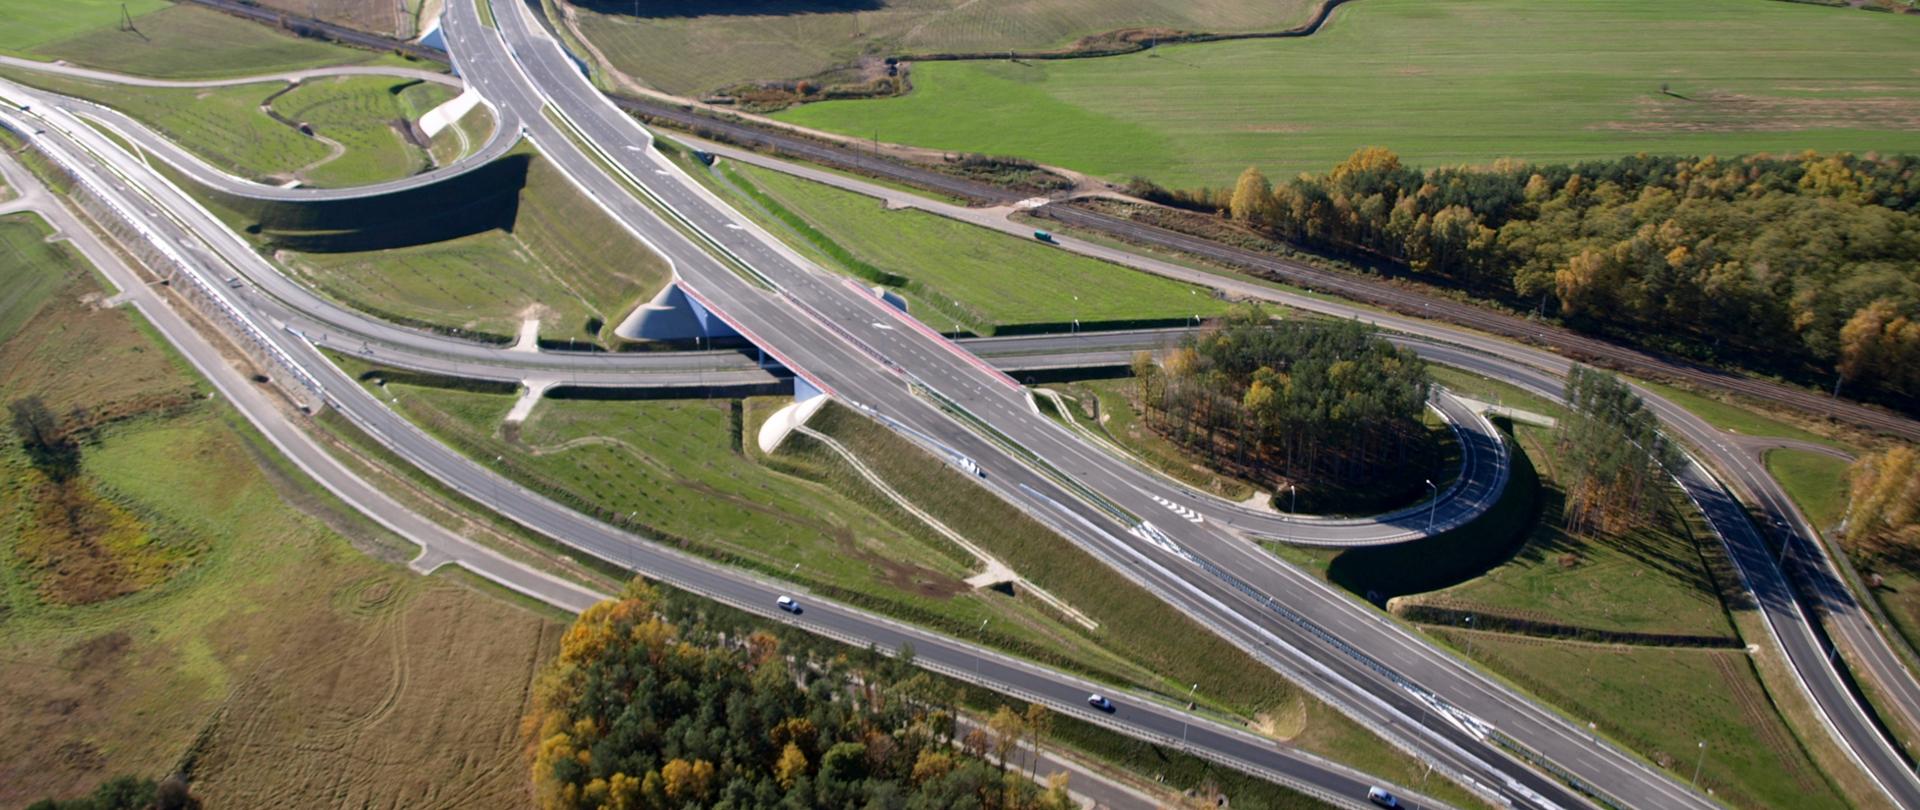 Zdjęcie przedstawiające węzeł drogowy Poznań Północ na drodze ekspresowej S11. Węzeł widoczny z powietrza przebiegający między łąkami, polami i zabudową magazynową. Na jednej z łącznic doprowadzających ruch do węzła widoczne poruszające się pojazdy.